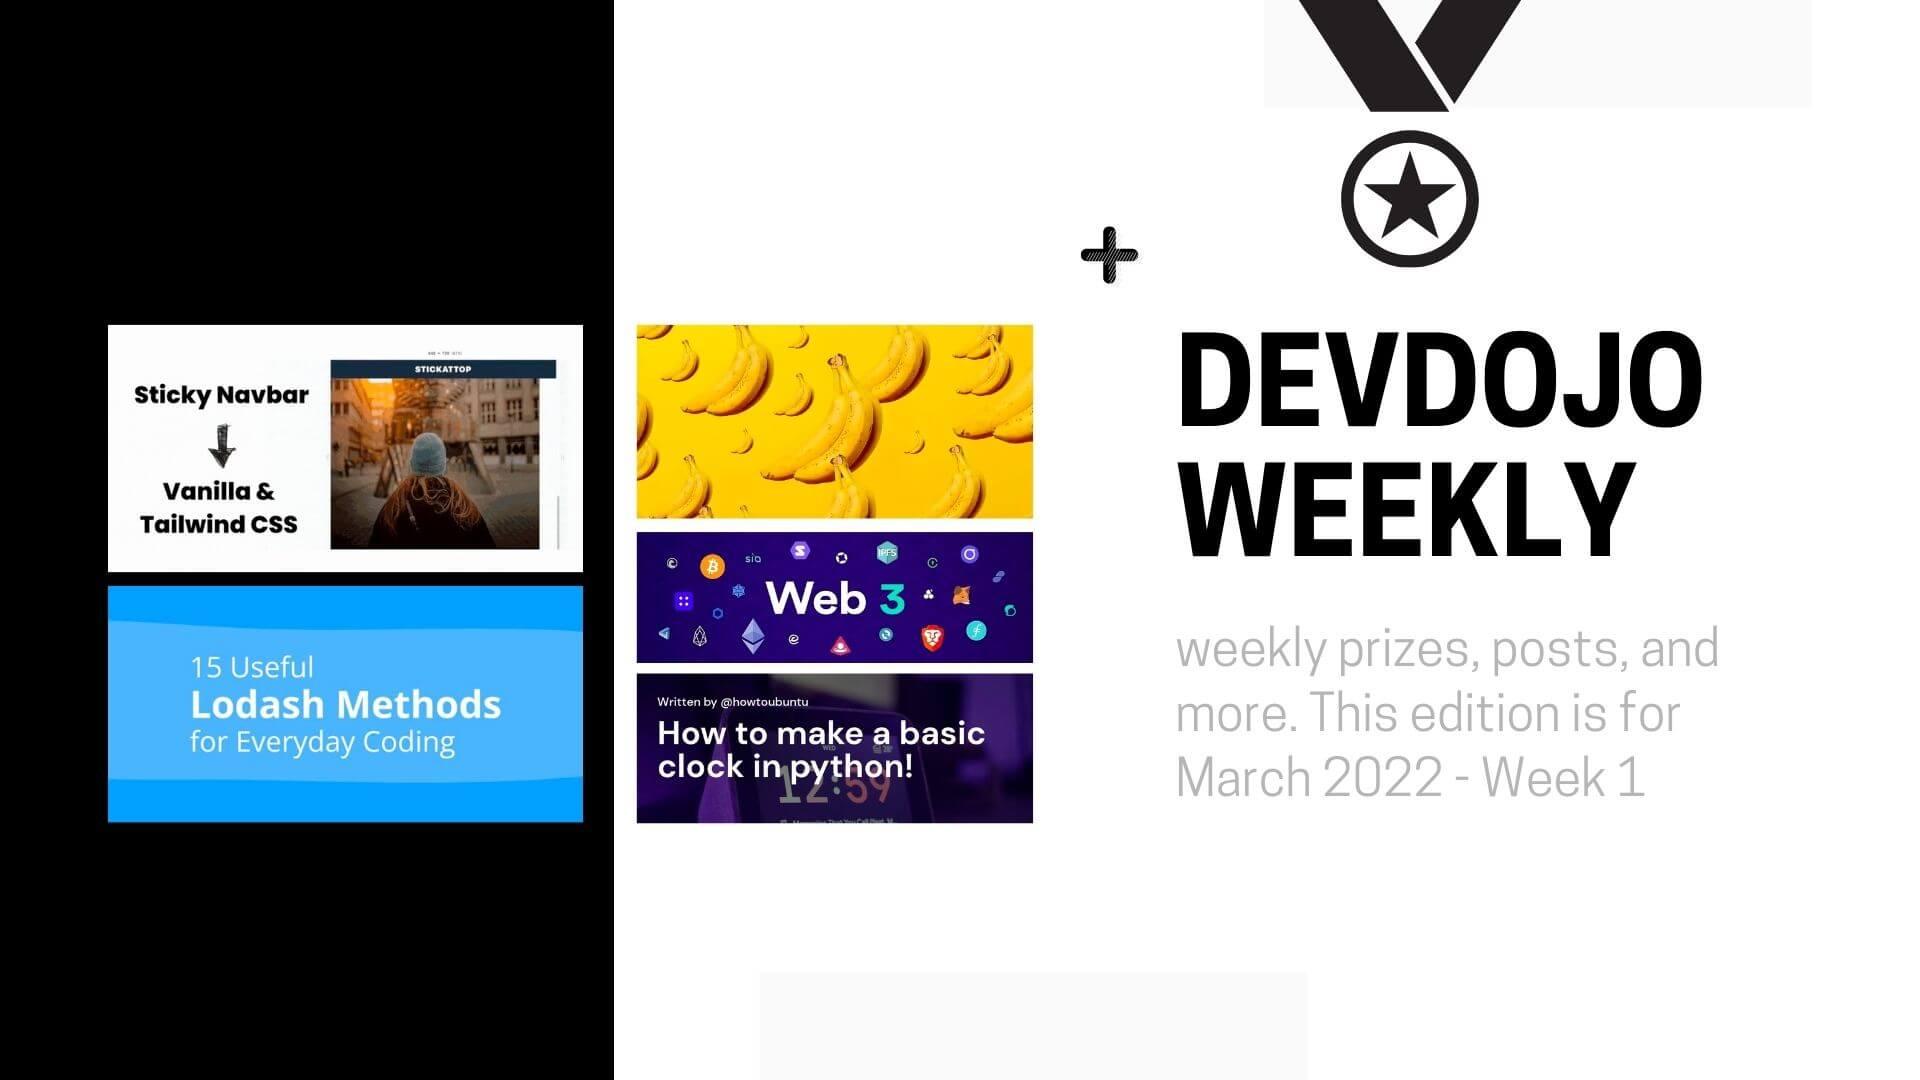 DevDojo Weekly - March 2022